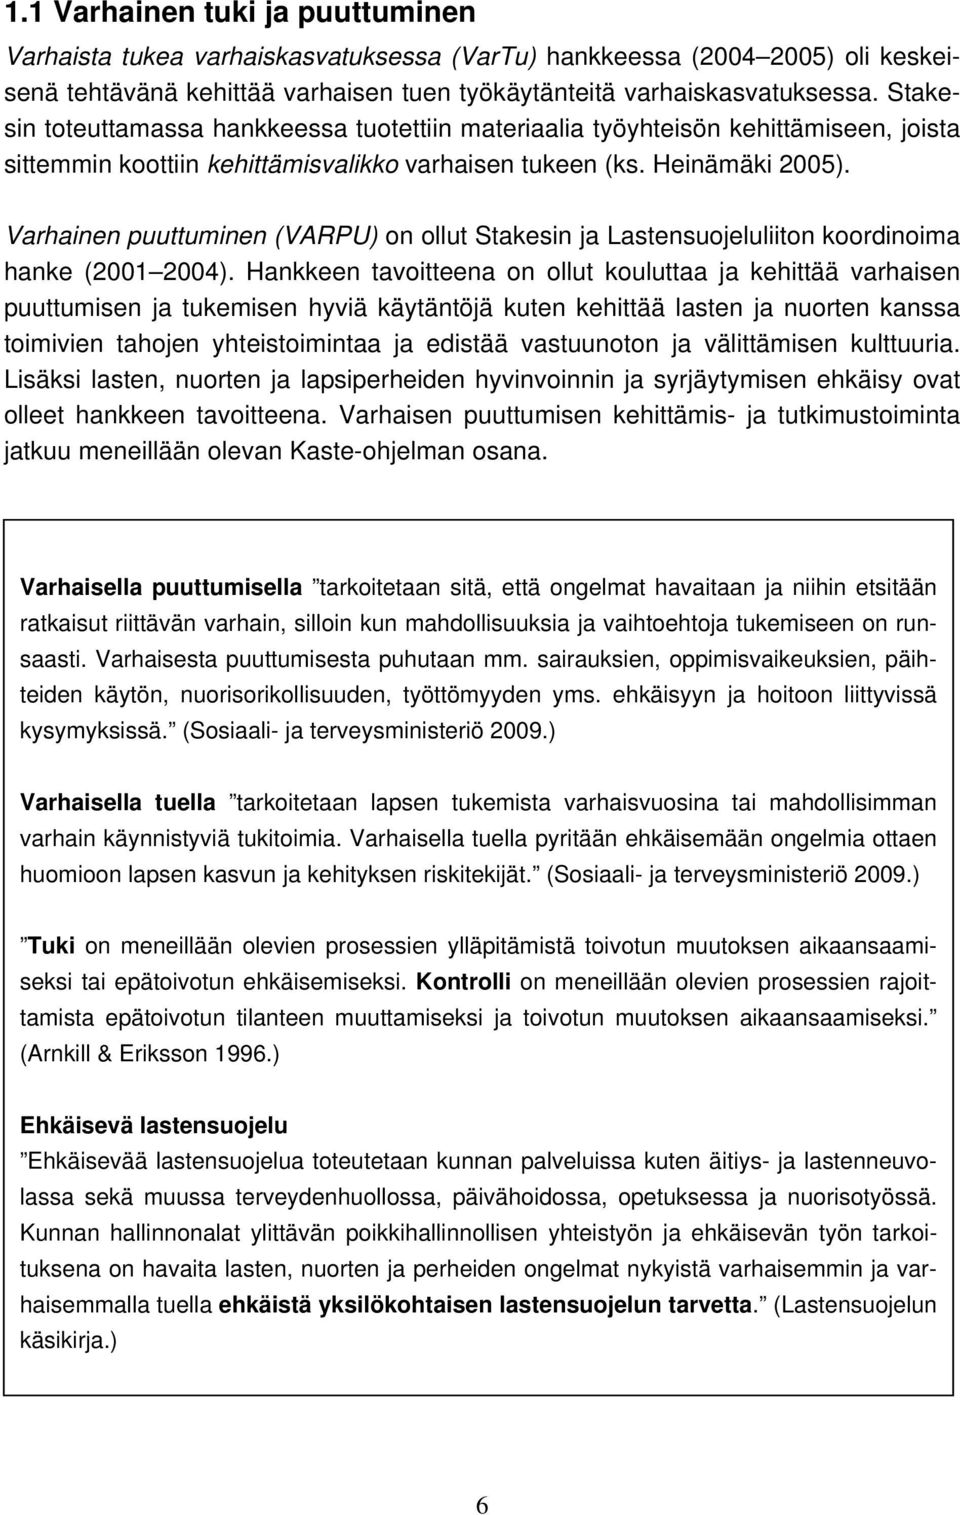 Varhainen puuttuminen (VARPU) n llut Stakesin ja Lastensujeluliitn krdinima hanke (2001 2004).